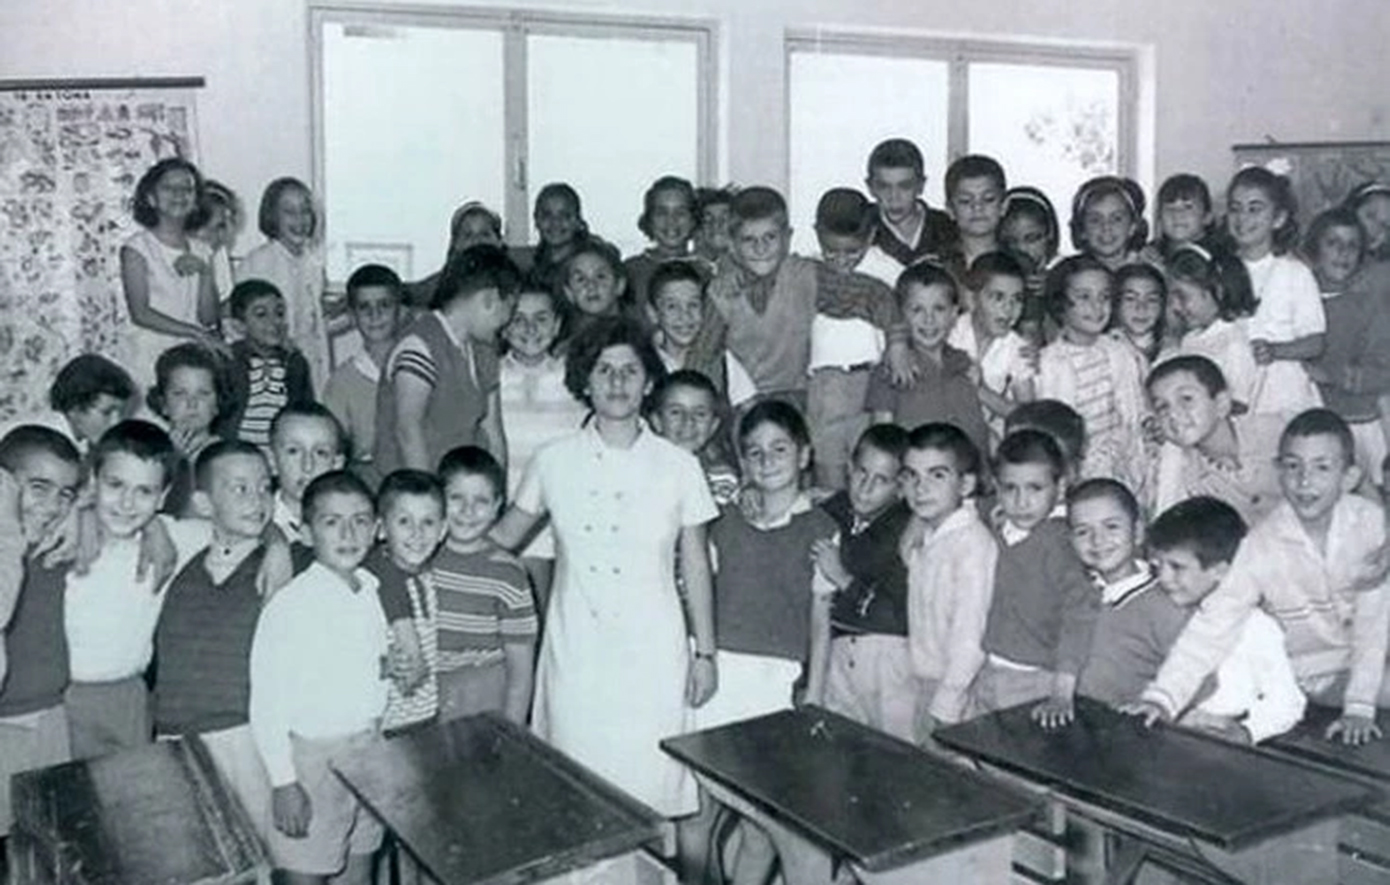 Σαν σήμερα 11 Απριλίου: Η κυβέρνηση Γ. Παπανδρέου το 1964 αλλάζει το εκπαιδευτικό σύστημα &#8211; Καθιερώνεται η δημοτική και γίνεται υποχρεωτική η εκπαίδευση για 9 χρόνια